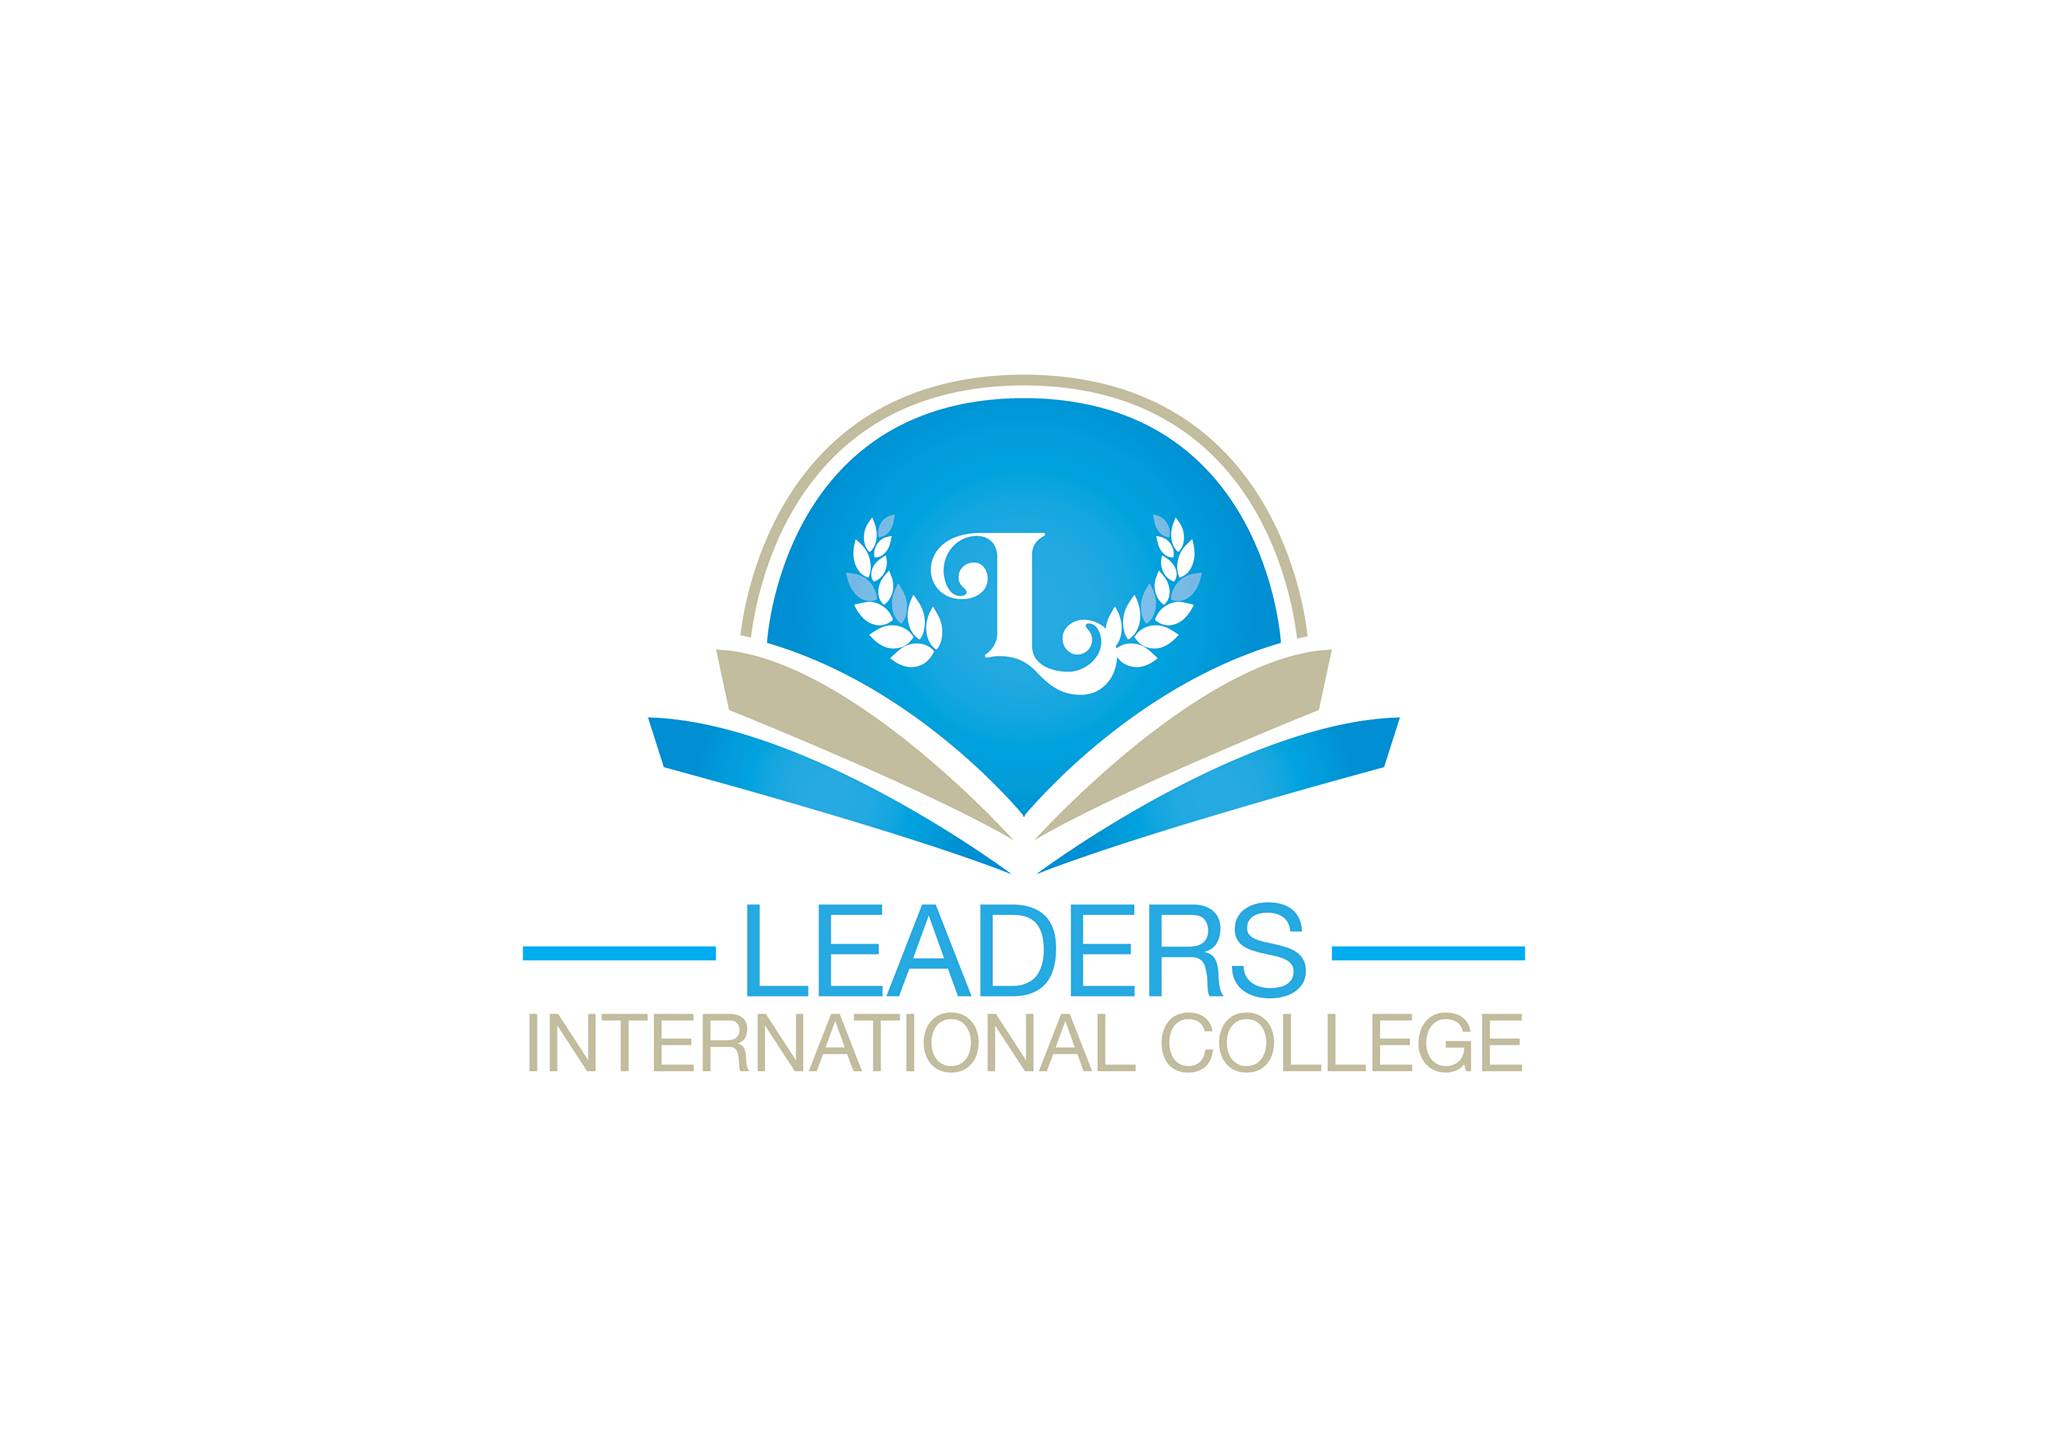 Leaders International College